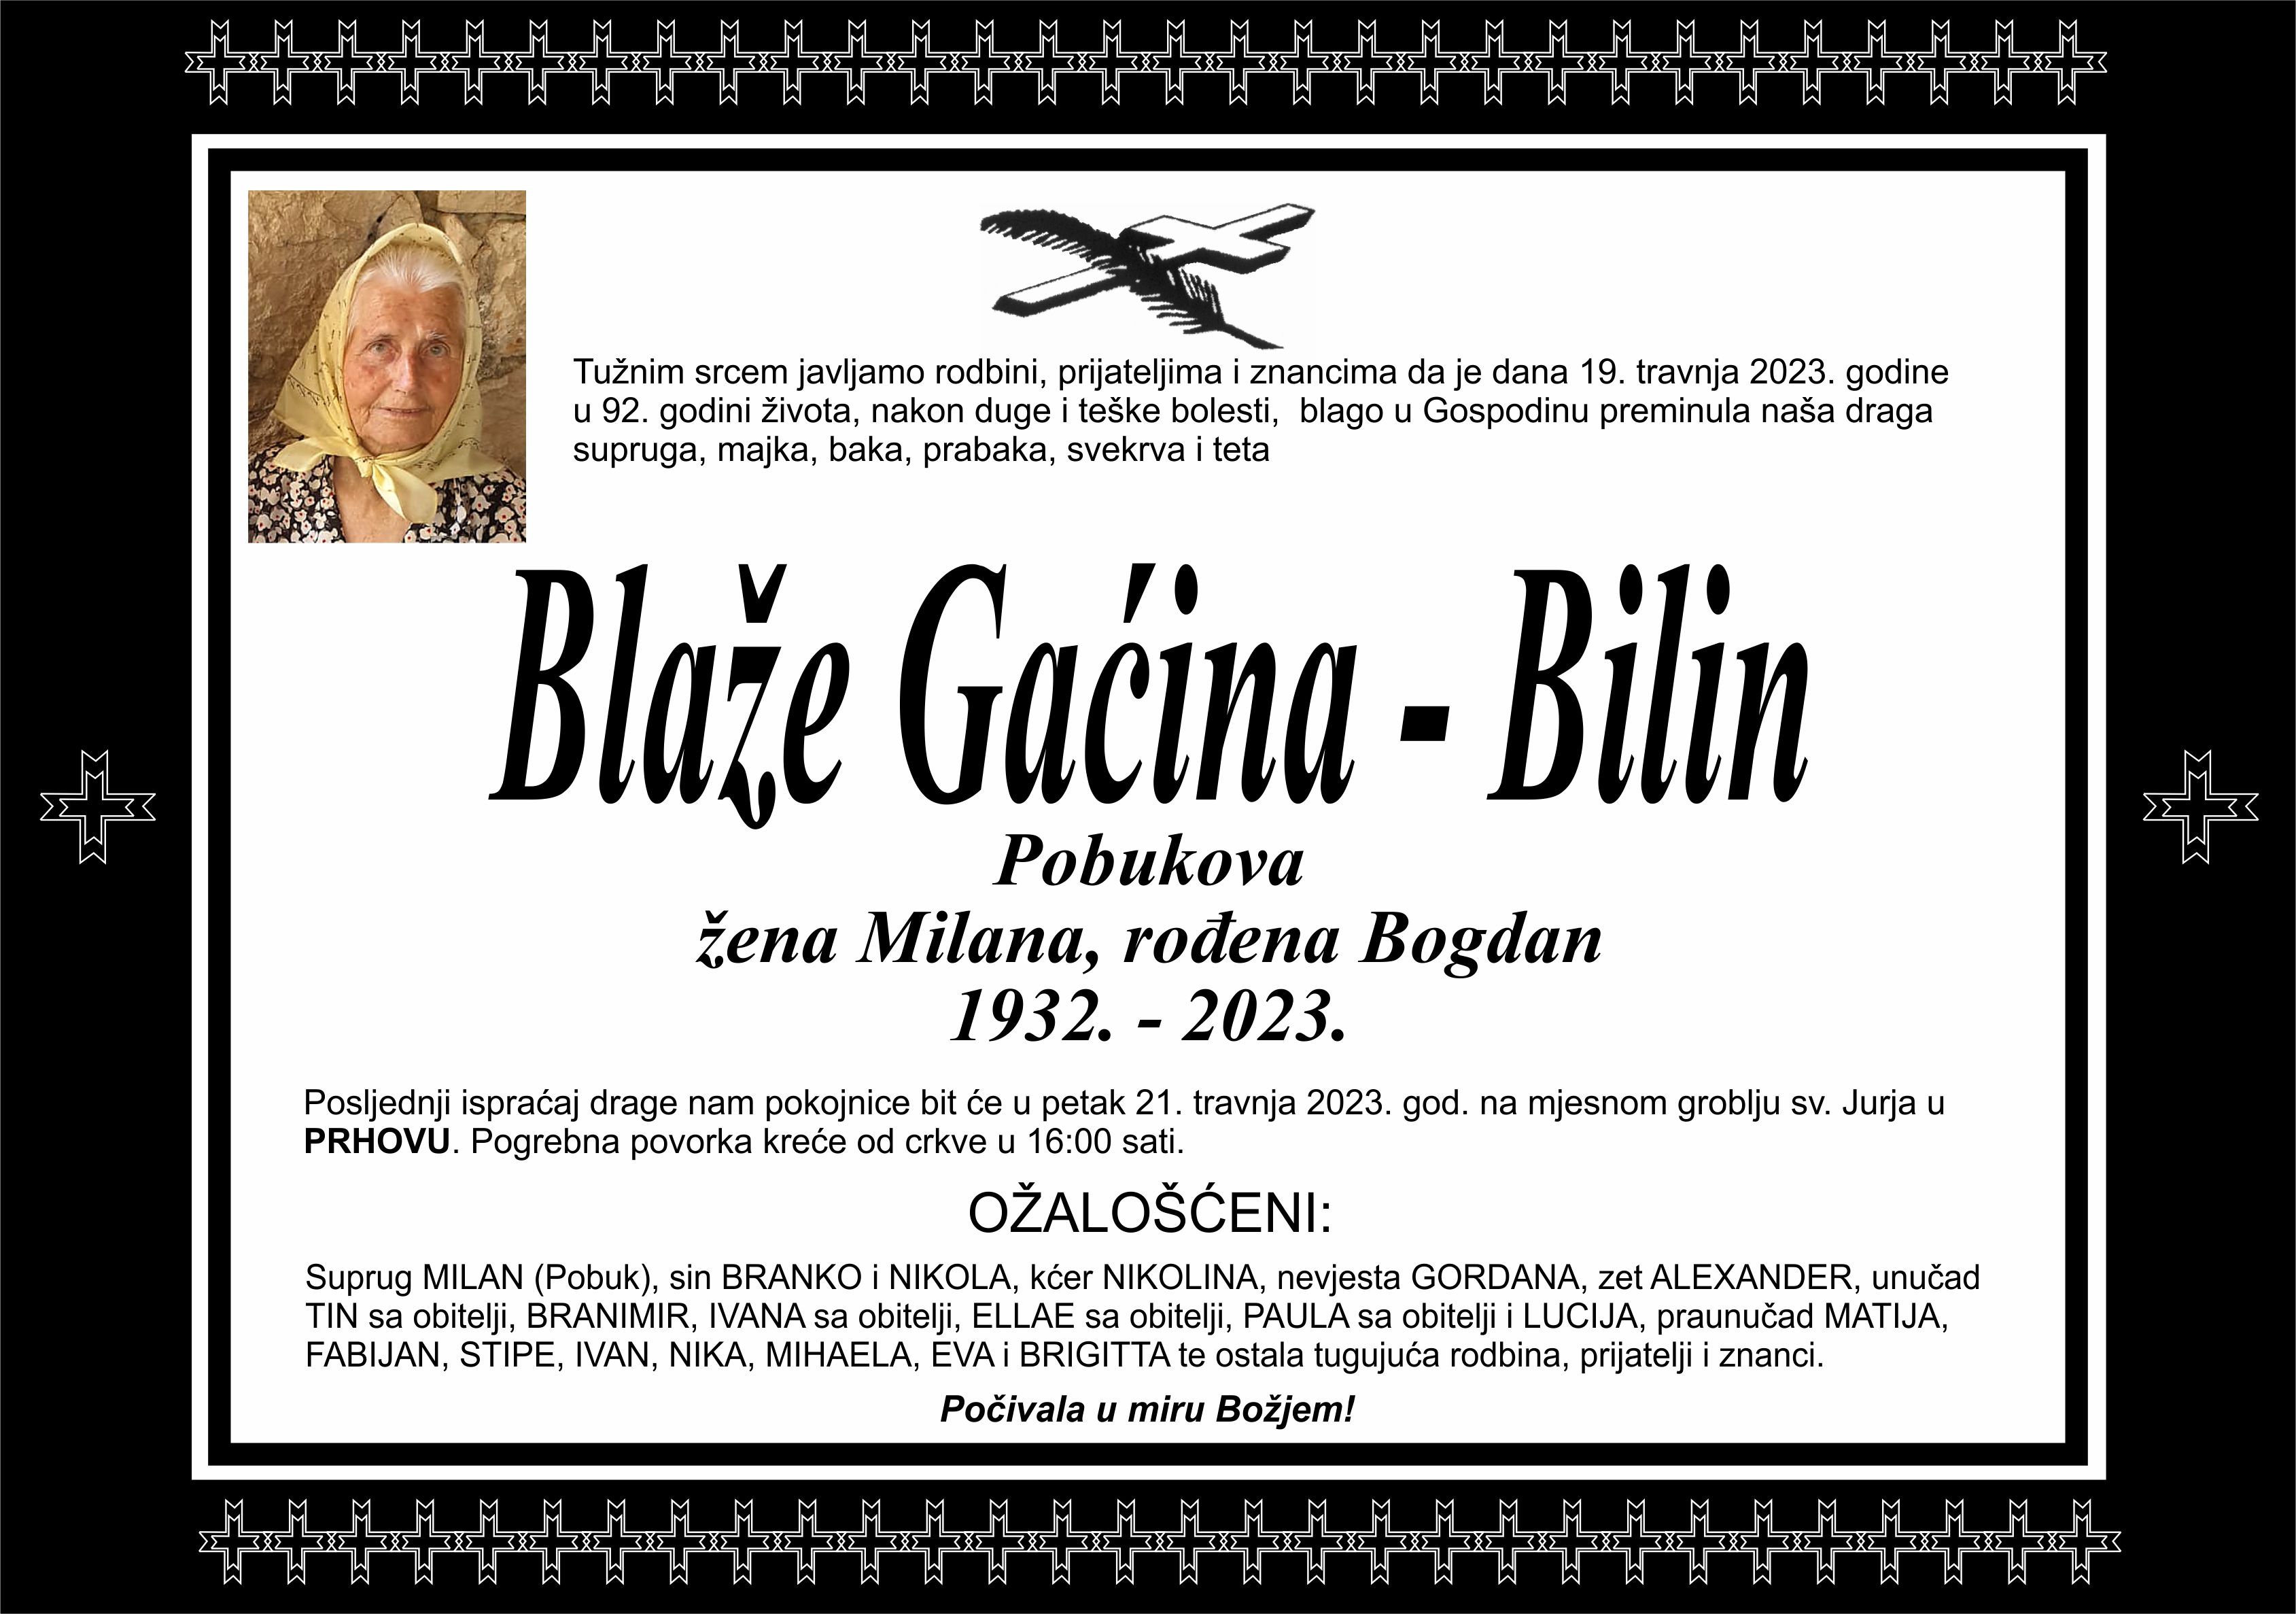 Blaže Gaćina - Bilin